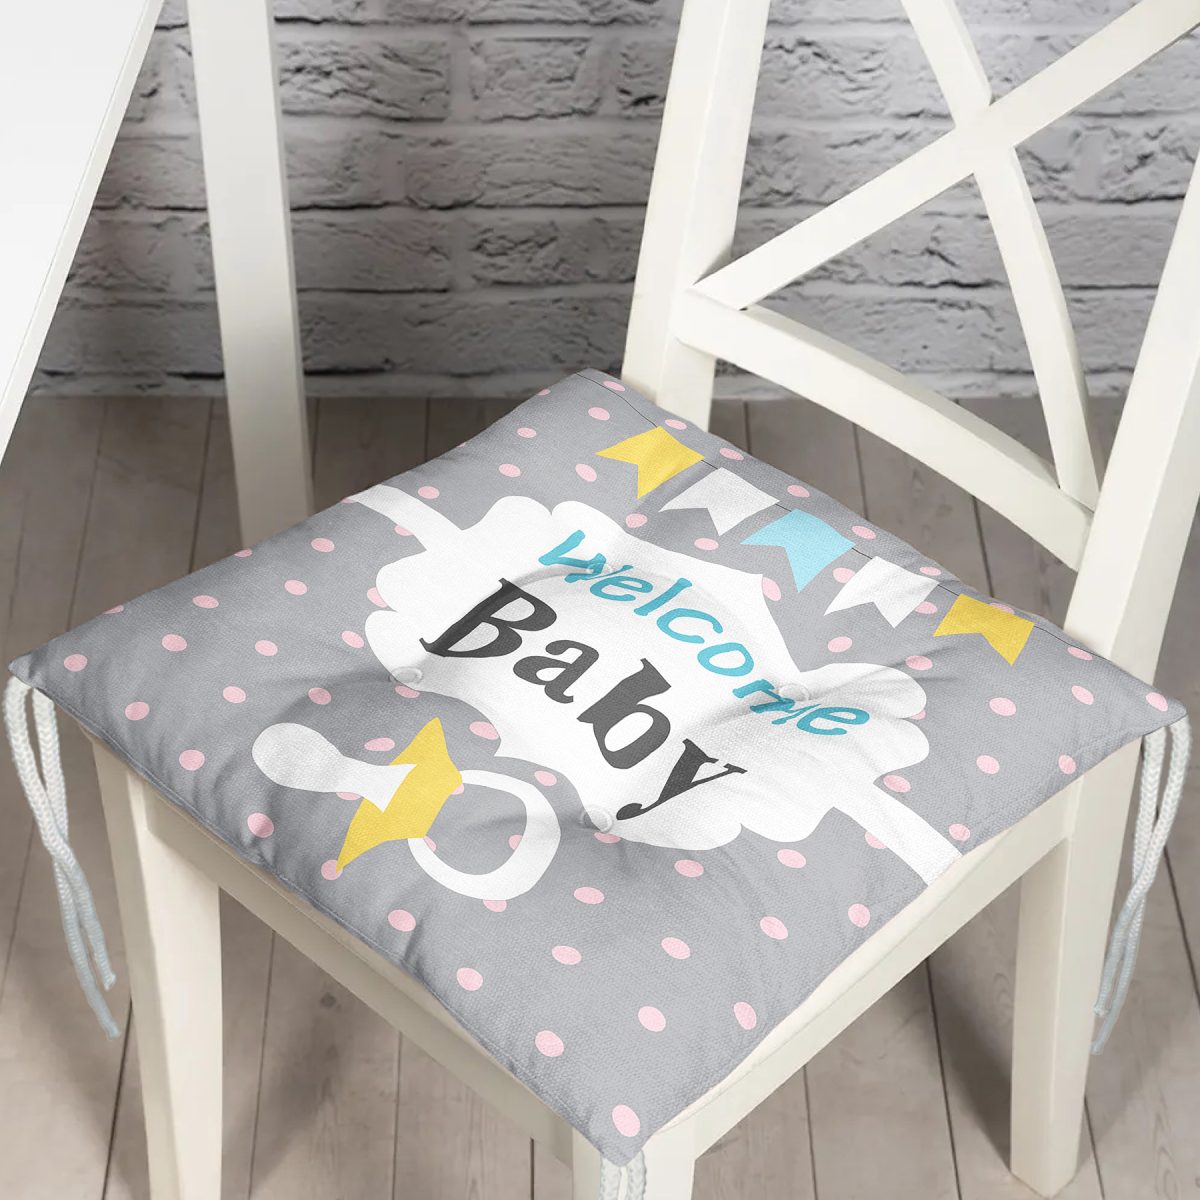 Gri Zemin Baby Shower Temalı Özel Tasarımlı Dijital Baskılı Çocuk Odası Pofuduk Sandalye Minderi Realhomes